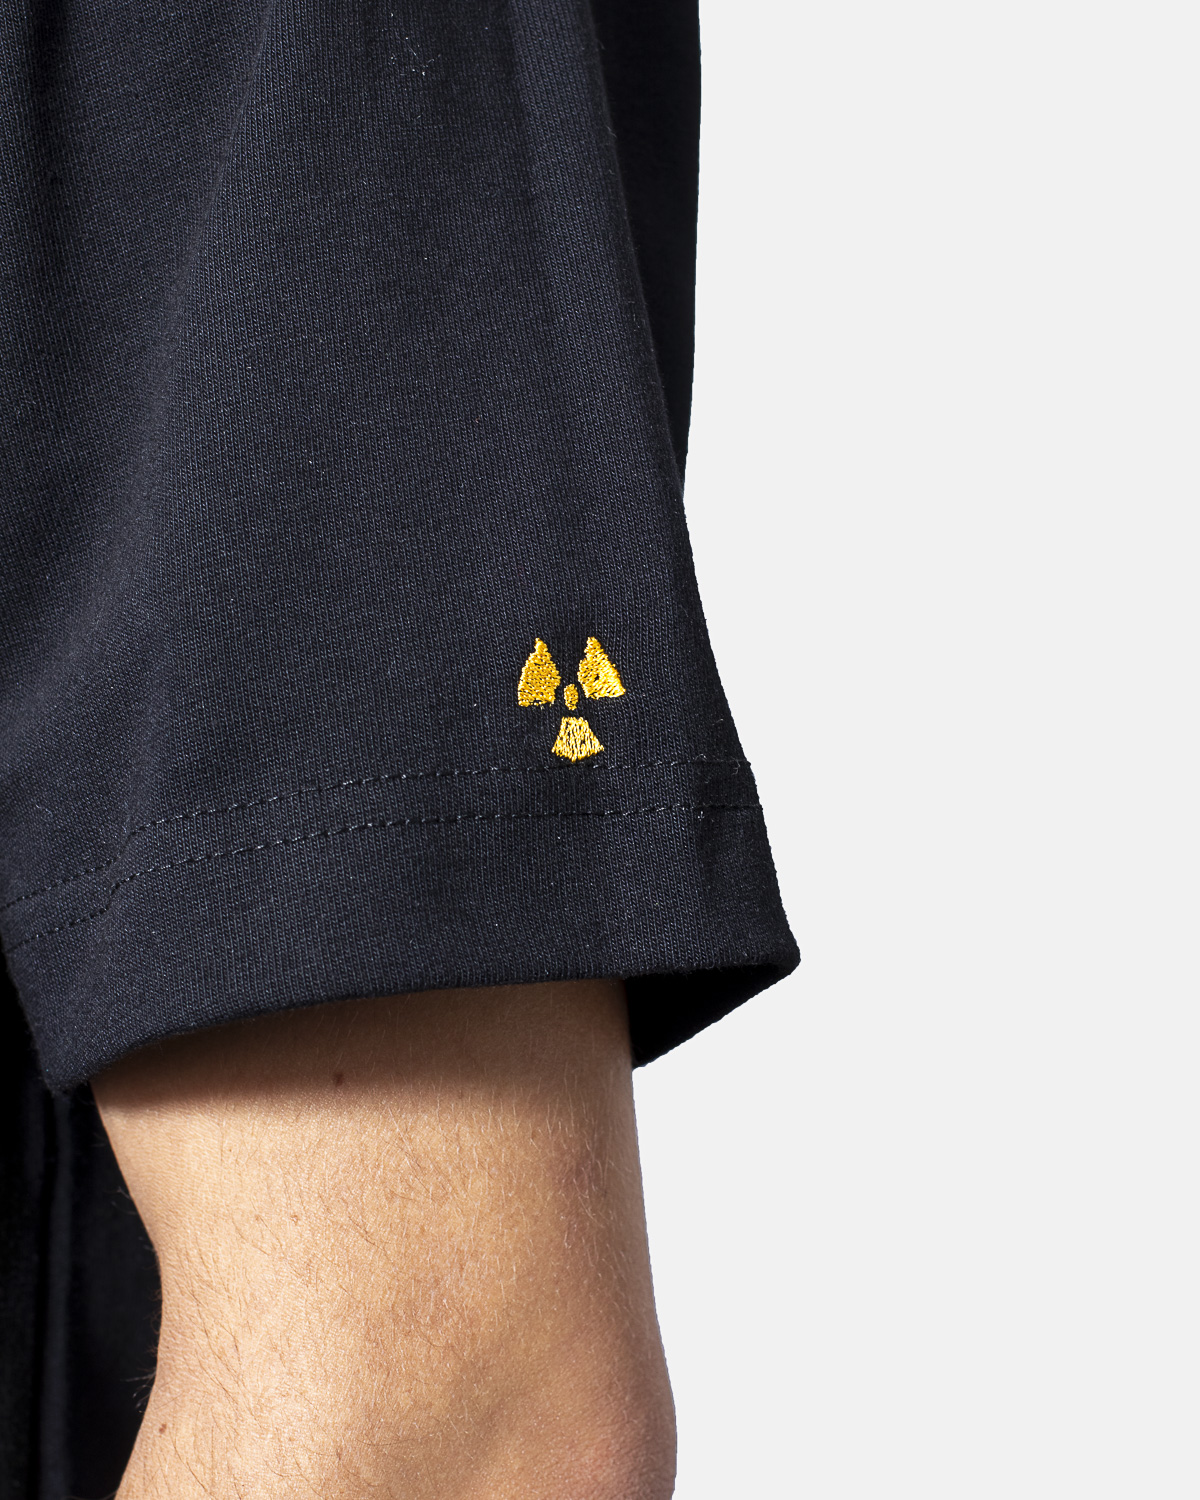 Nucleair logo shirt-Toxic Garments